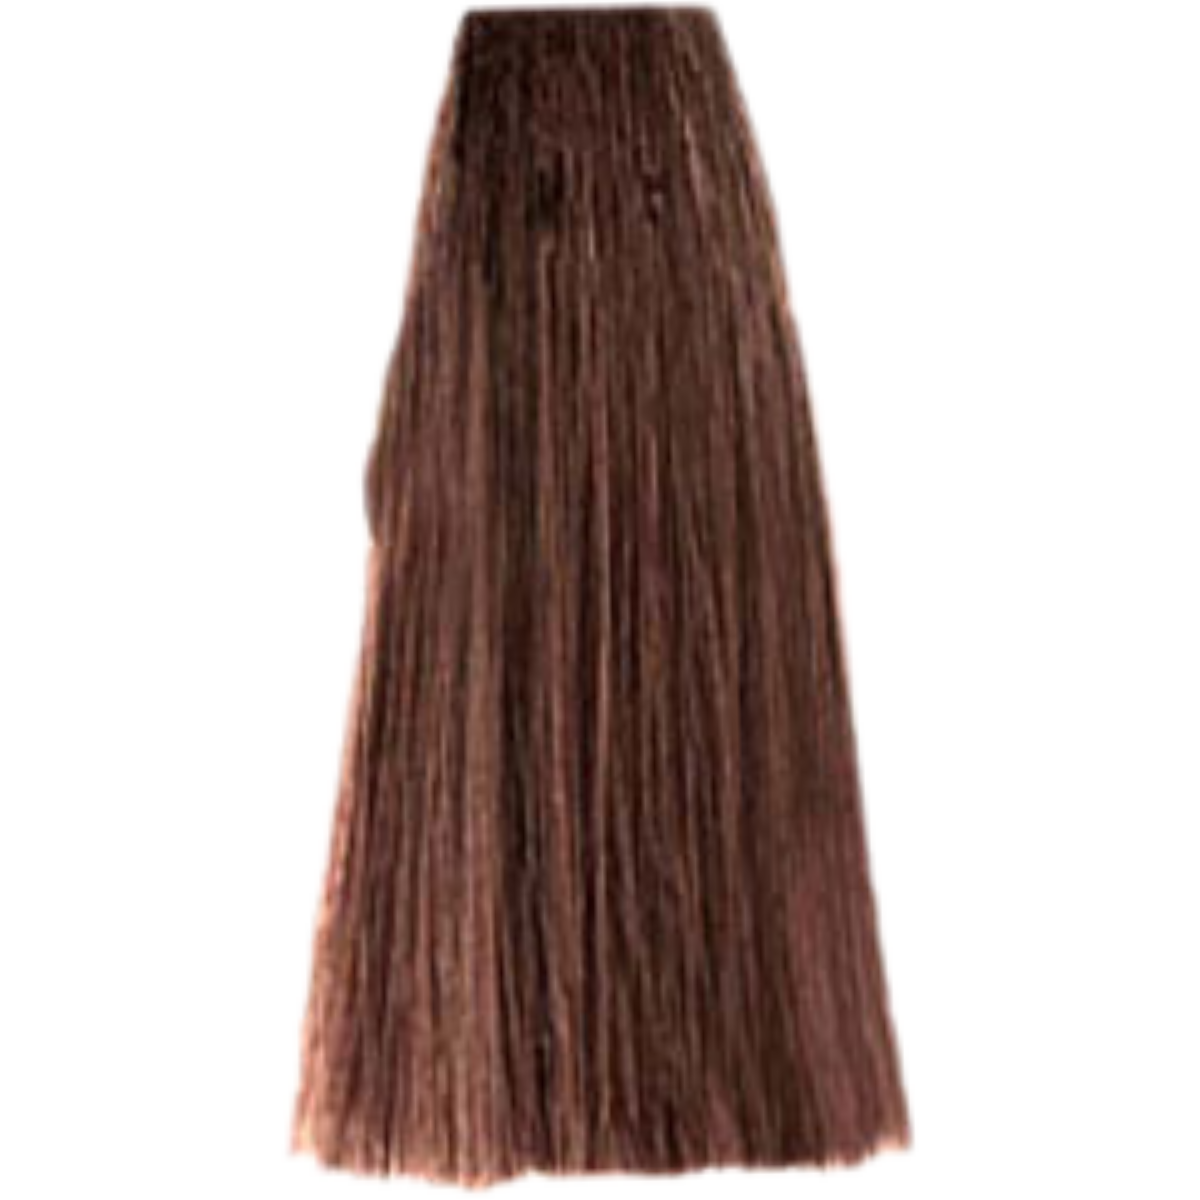 צבע שיער 5.35 LIGHT CHOCOLATE BROWN פארמויטה FarmaVita צבע לשיער 100 גרם